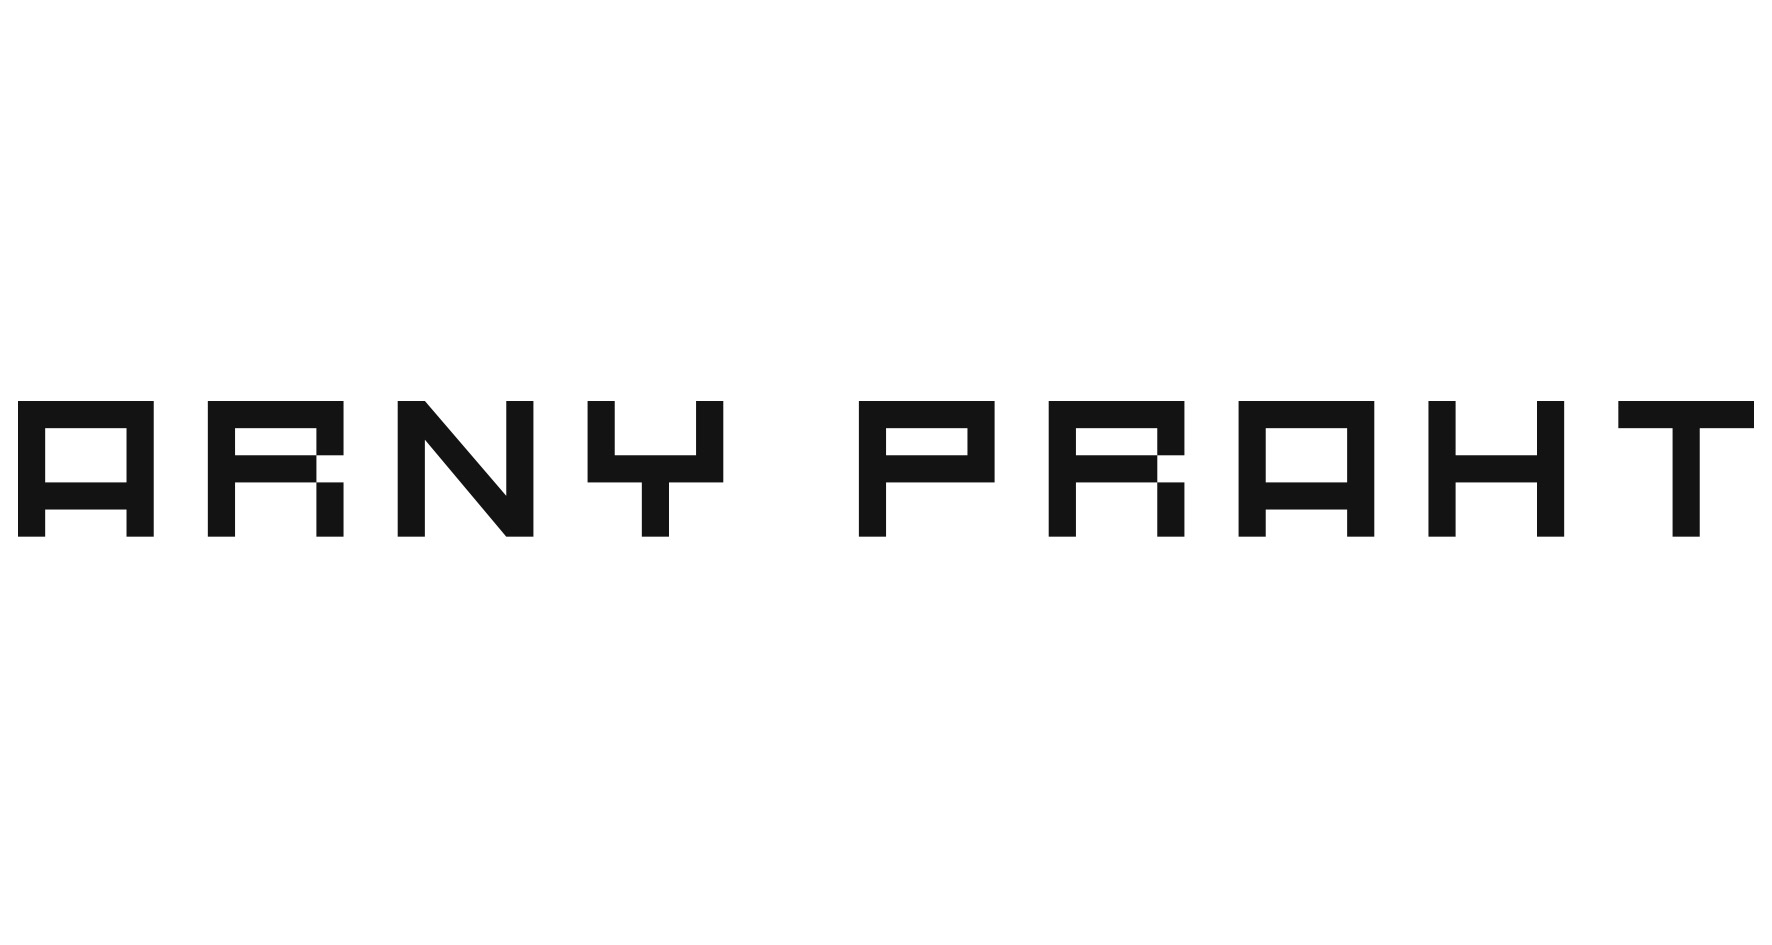 Arny Praht Одежда и аксессуары, купить онлайн, Arny Praht в универмаге Bolshoy